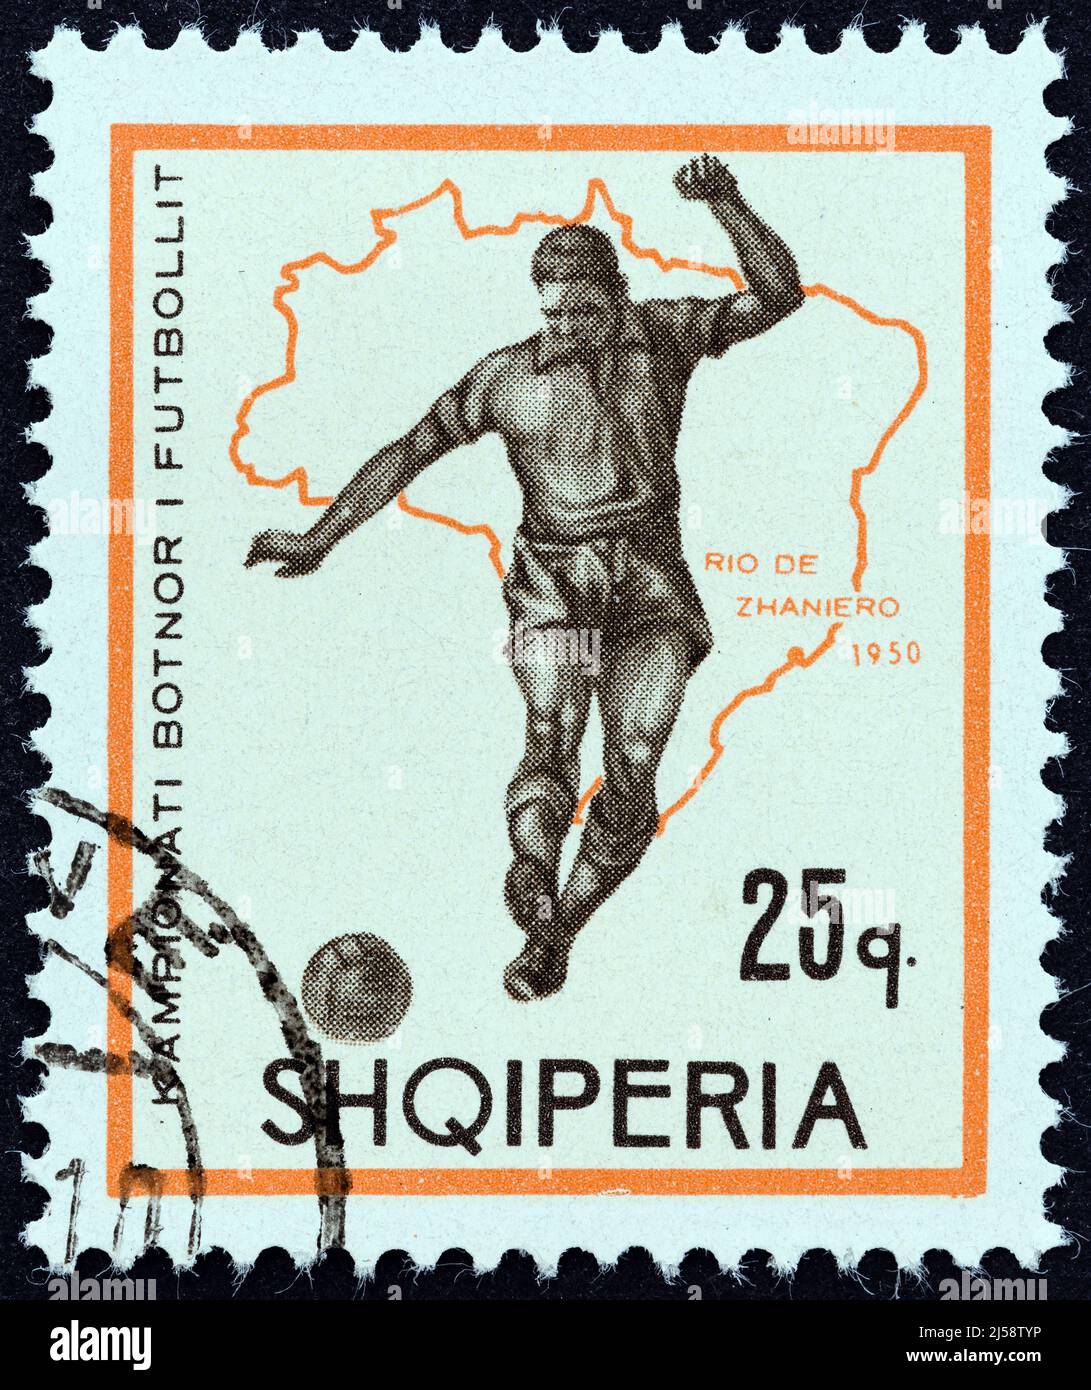 ALBANIE - VERS 1966: Un timbre imprimé en Albanie du numéro de la coupe du monde de football - Angleterre montre le joueur de football et la carte du Brésil (1950). Banque D'Images